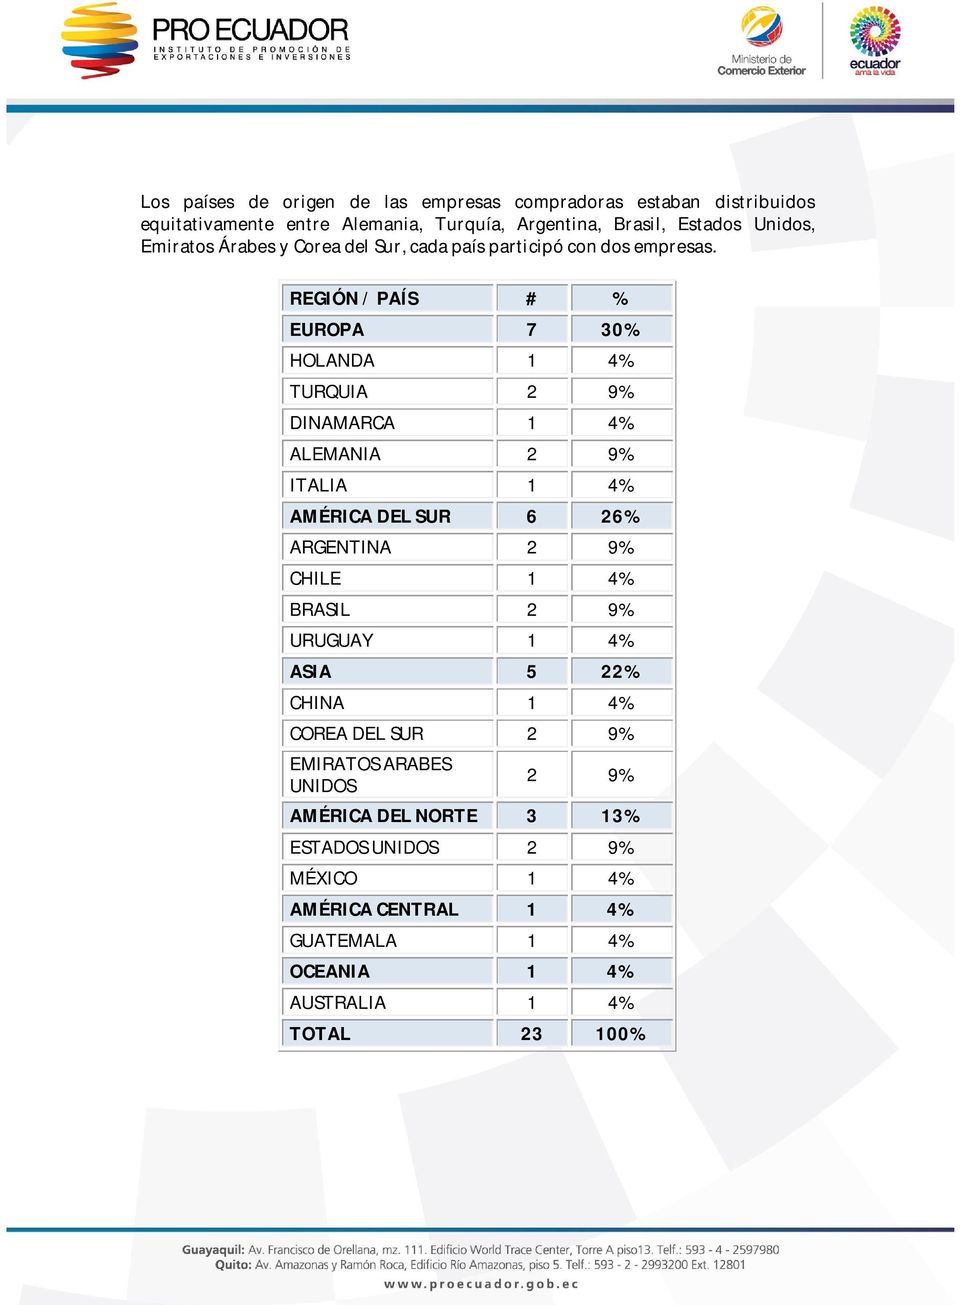 REGIÓN / PAÍS # % EUROPA 7 30% HOLANDA 1 4% TURQUIA 2 9% DINAMARCA 1 4% ALEMANIA 2 9% ITALIA 1 4% AMÉRICA DEL SUR 6 26% ARGENTINA 2 9% CHILE 1 4%